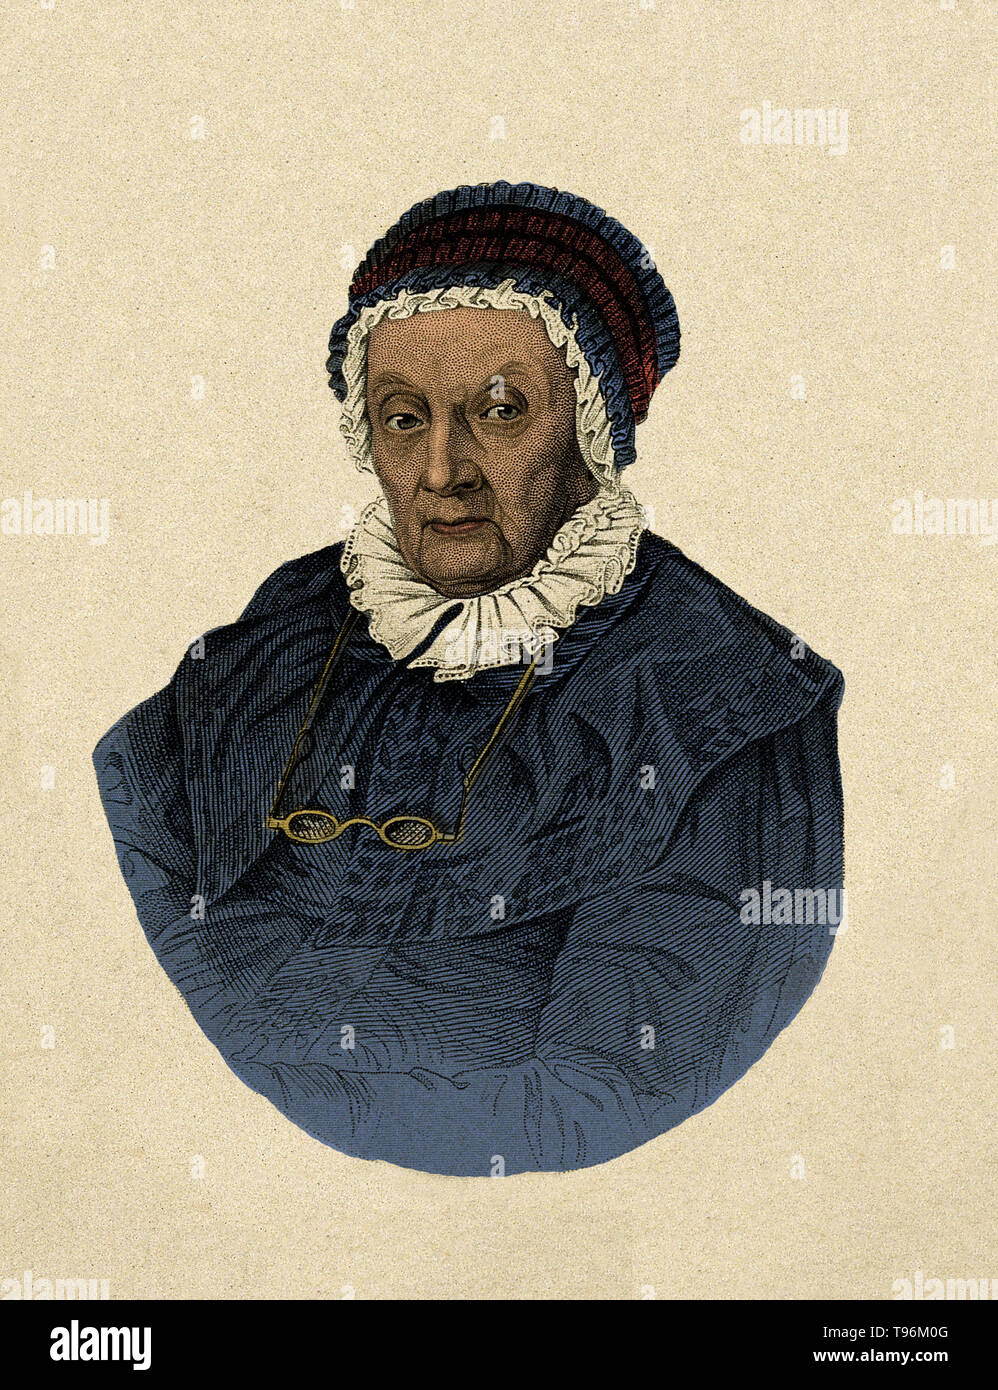 Caroline Herschel, âgé de 92 ans. Gravure crépi par Joseph Brown. Caroline Lucretia Herschel (16 mars 1750 - 9 janvier 1848) était un astronome allemand. À l'âge de 10 ans, Caroline a été frappé avec le typhus et subi une perte de vision dans l'oeil gauche à la suite de sa maladie. Sa mère a estimé qu'il était mieux pour elle de s'entraîner pour être un serviteur de la chambre plutôt que de devenir éduqué conformément aux souhaits de son père. Banque D'Images